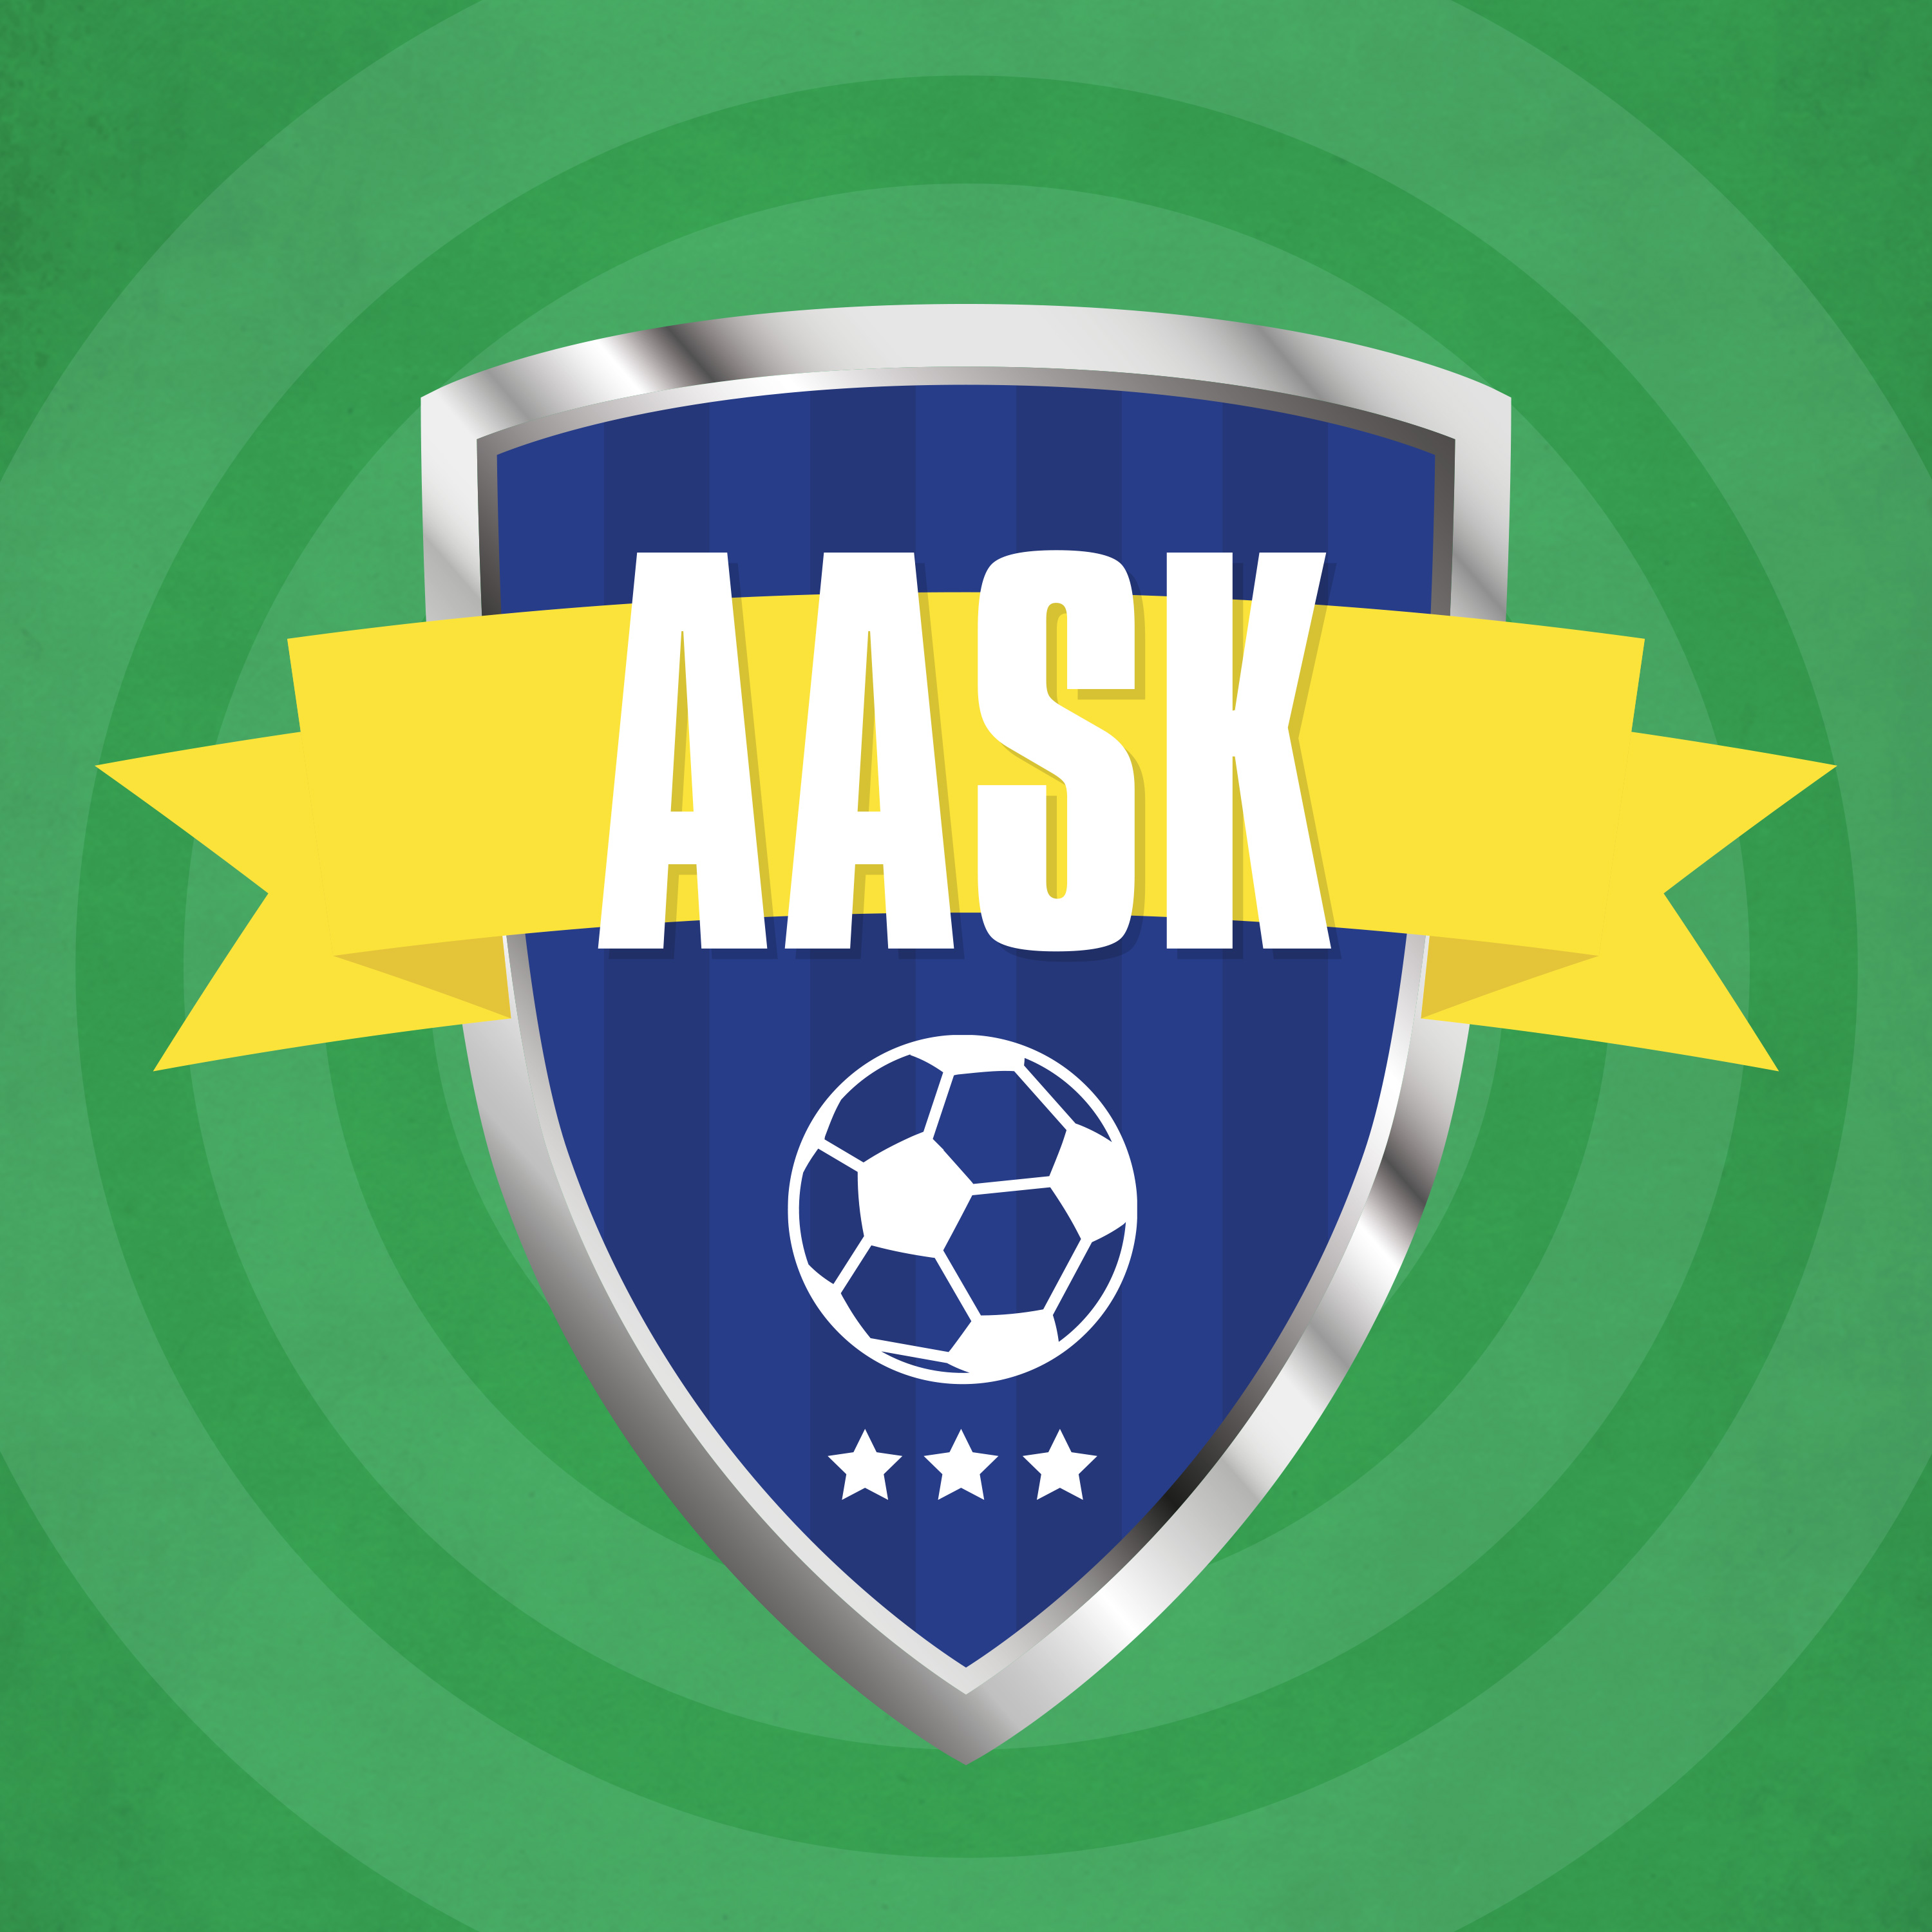 logo-assk